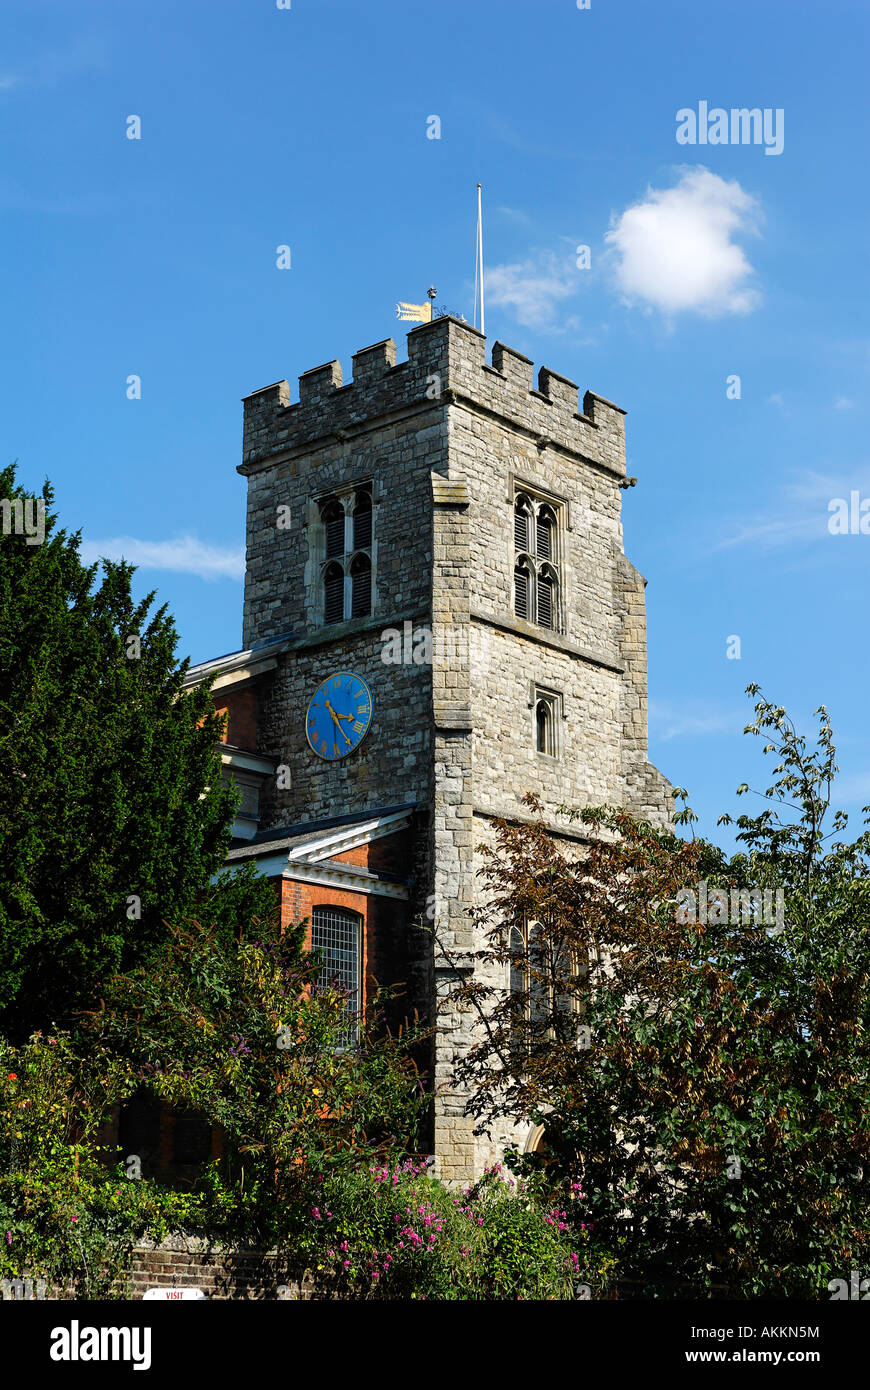 The clock tower of St Mary's Parish church, Twickenham Stock Photo